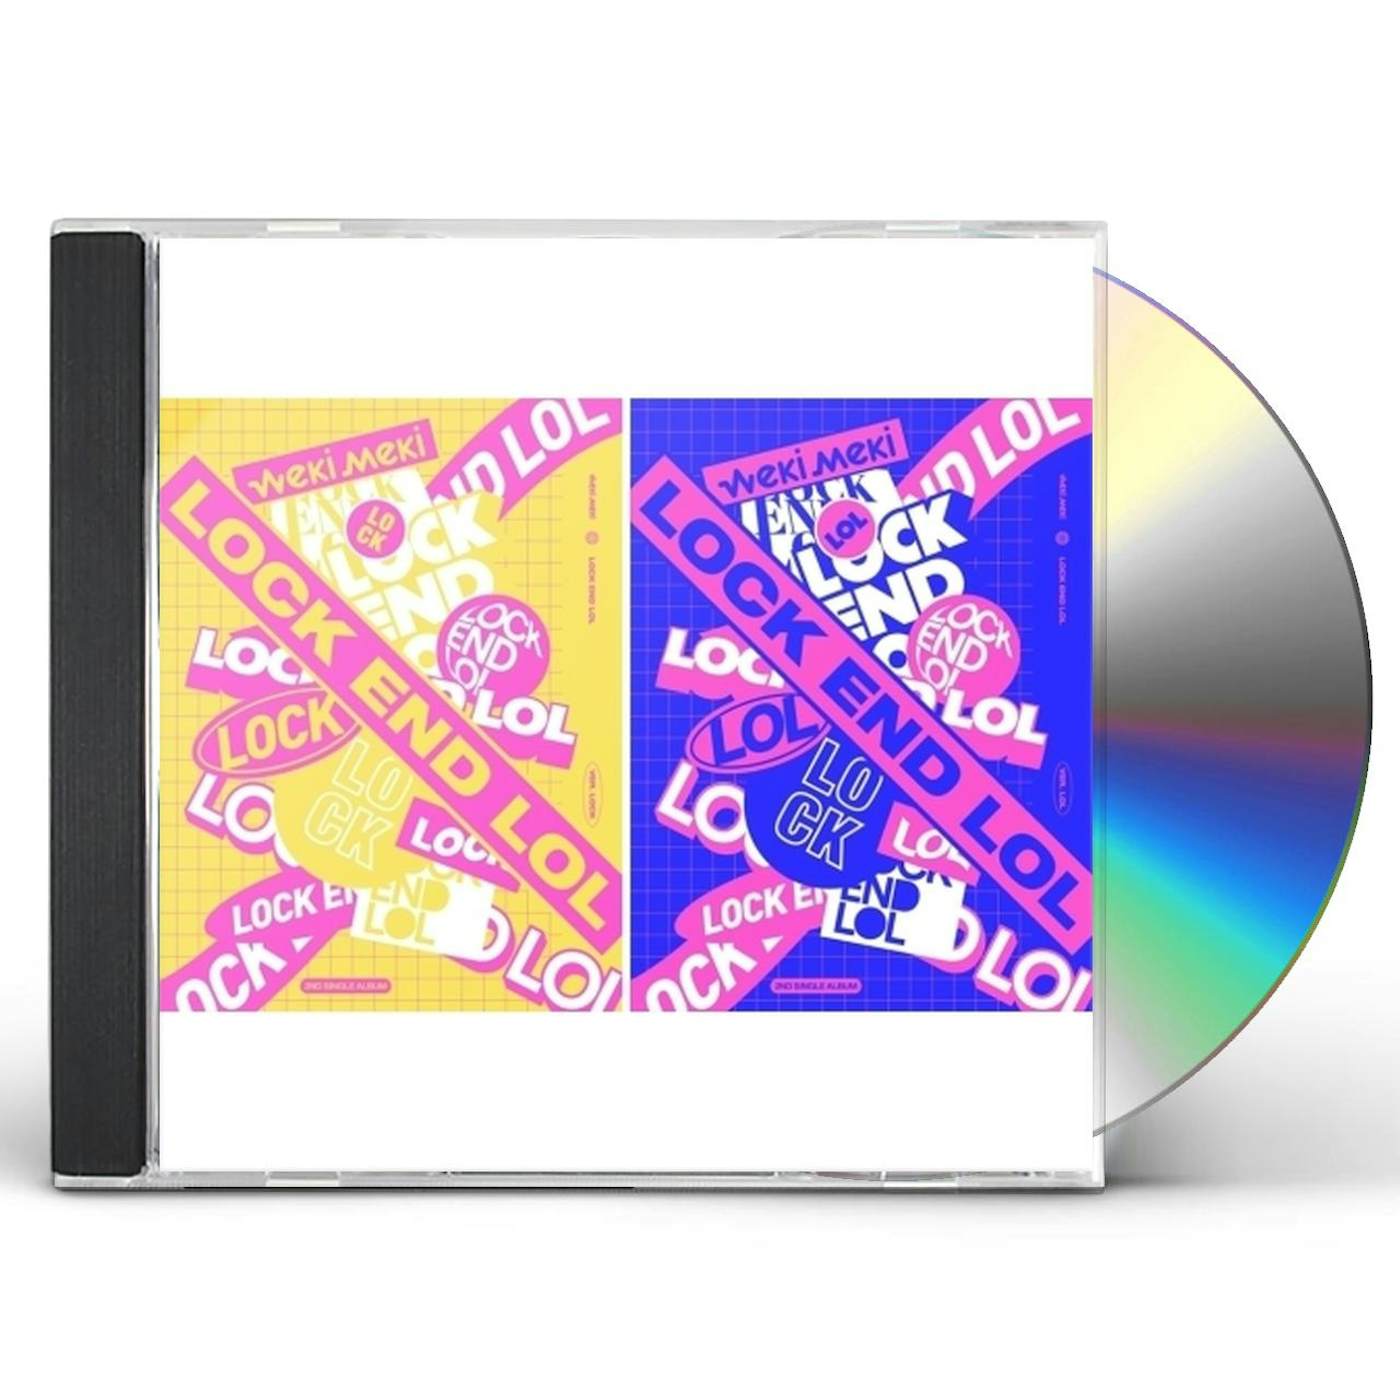 Weki Meki LOCK END LOL (RANDOM COVER) CD